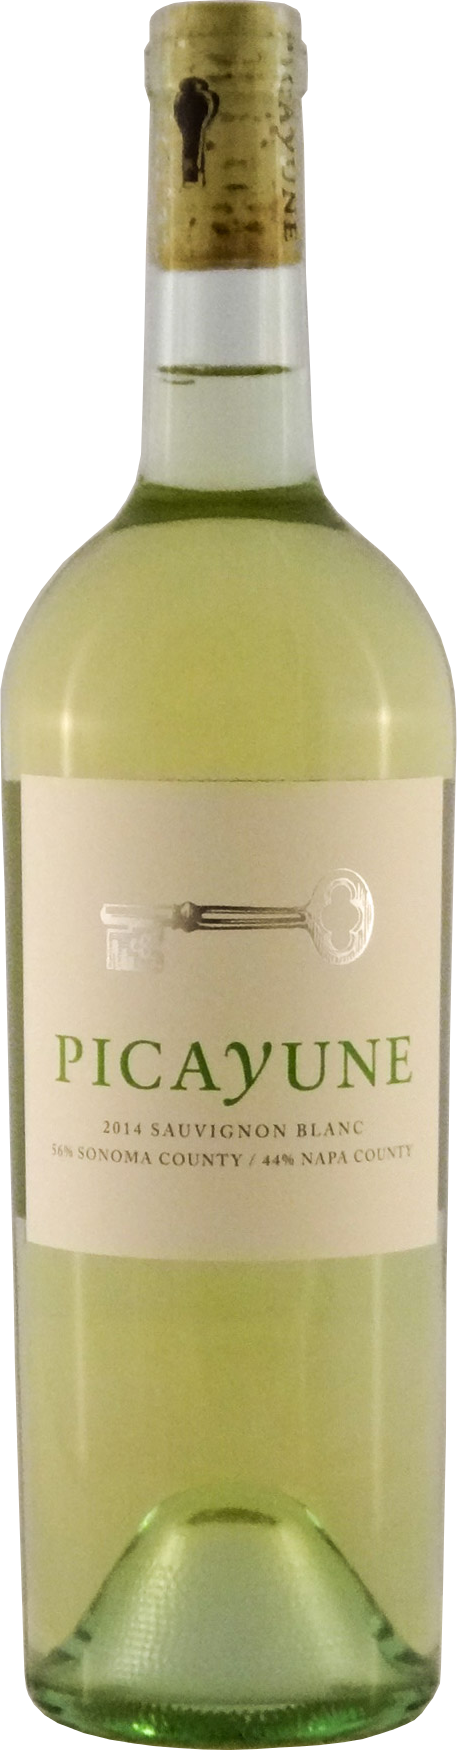 2014 Picayune Sauvignon Blanc Sonoma & Napa - Qorkz